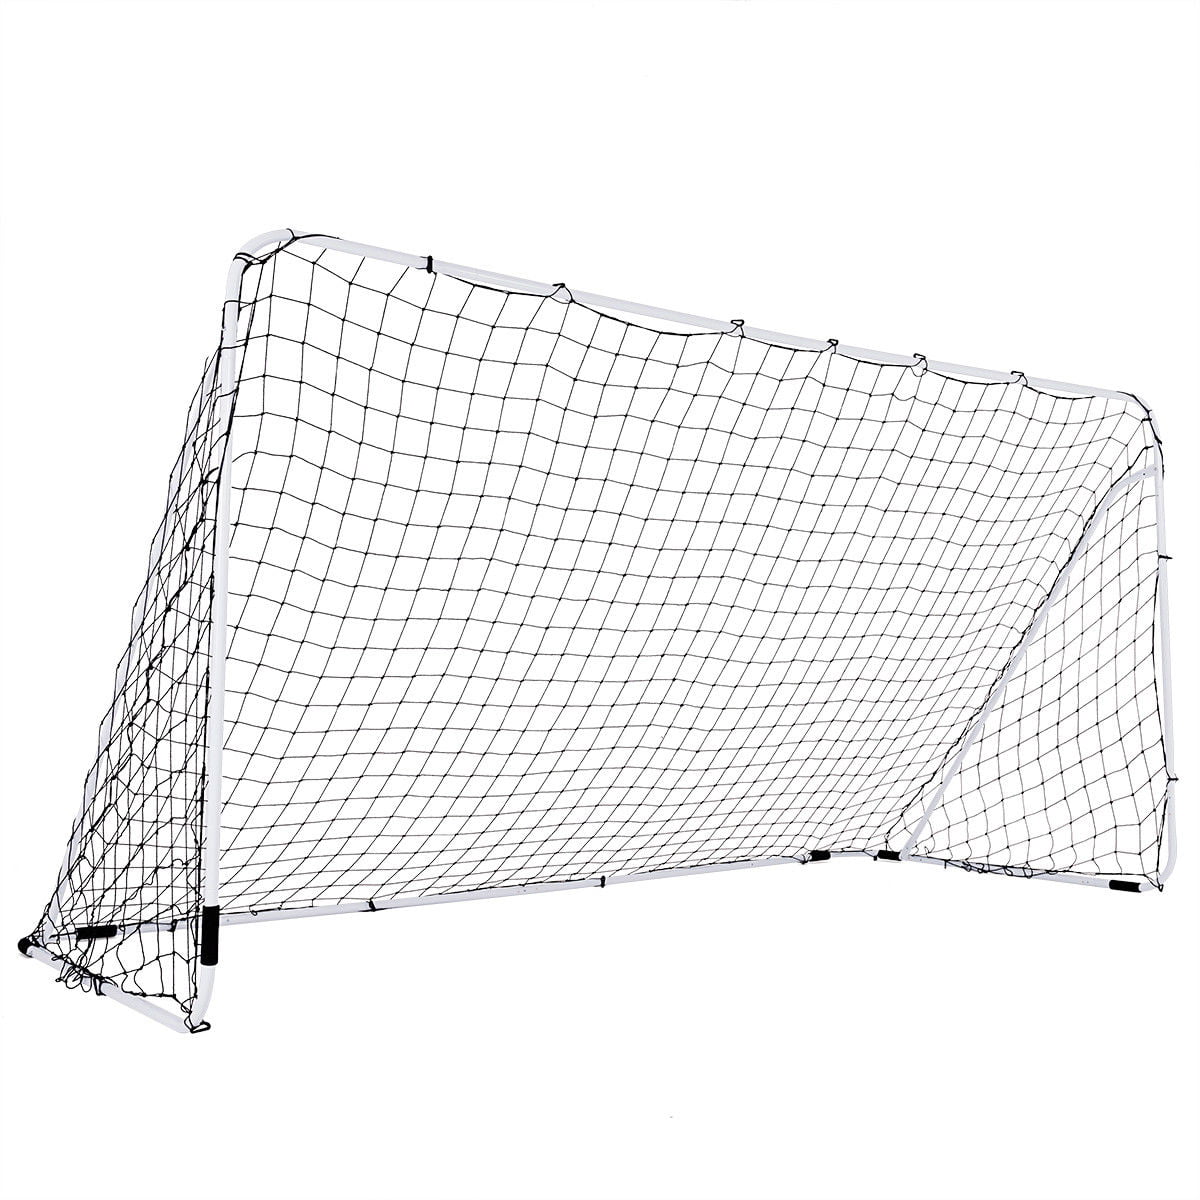 12’ x 6’ Steel Football Soccer Goal Net Gate Backyard Outdoor Sport Weatherproof